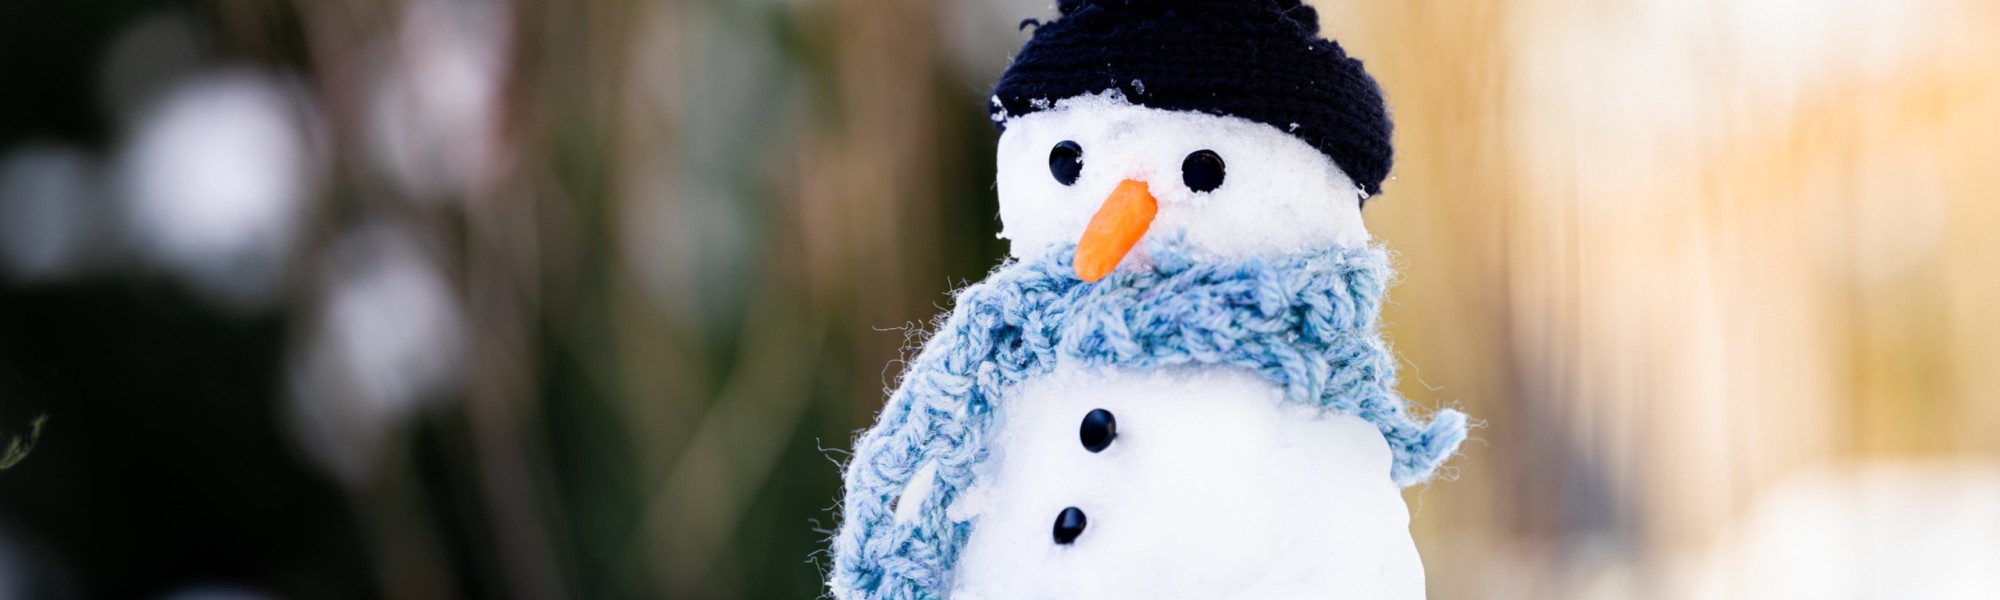 Lumiukolla on musta pipo ja vaaleansininen kaulaliina.